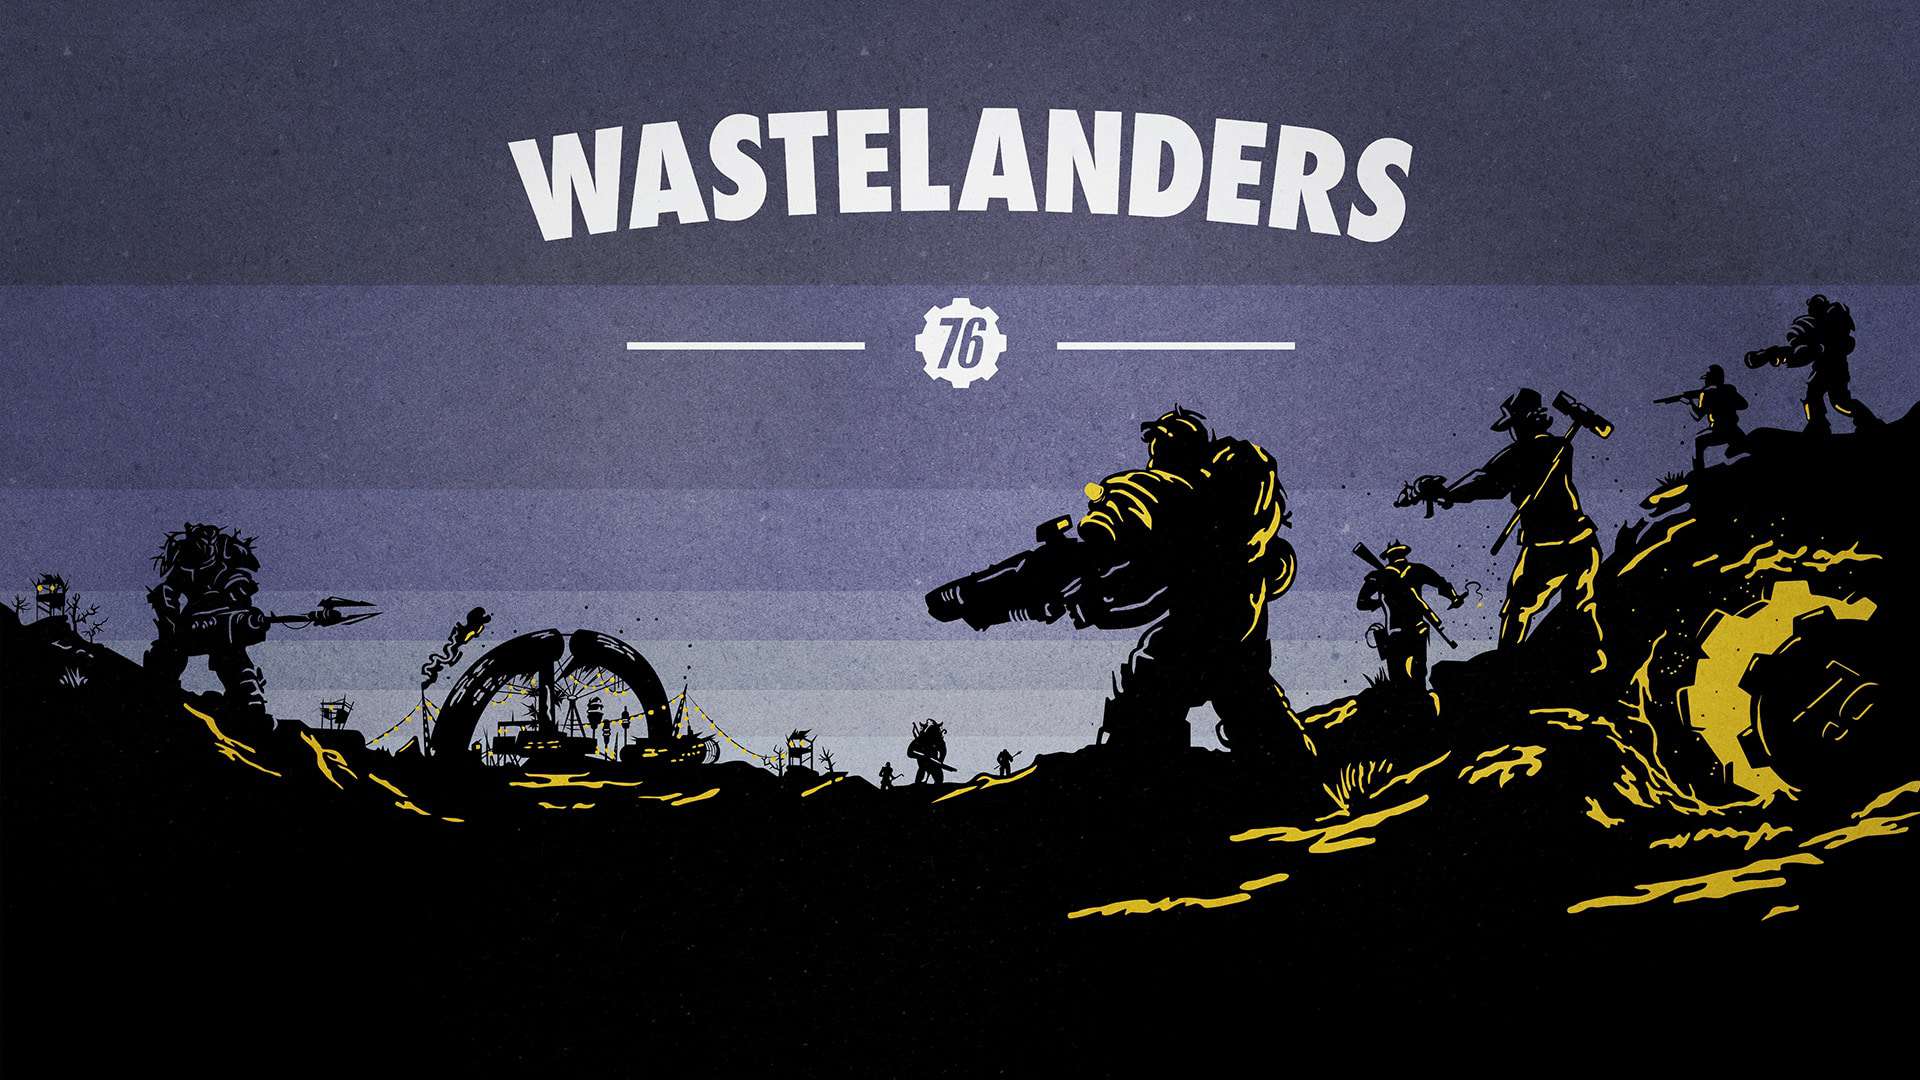 Wastelanders